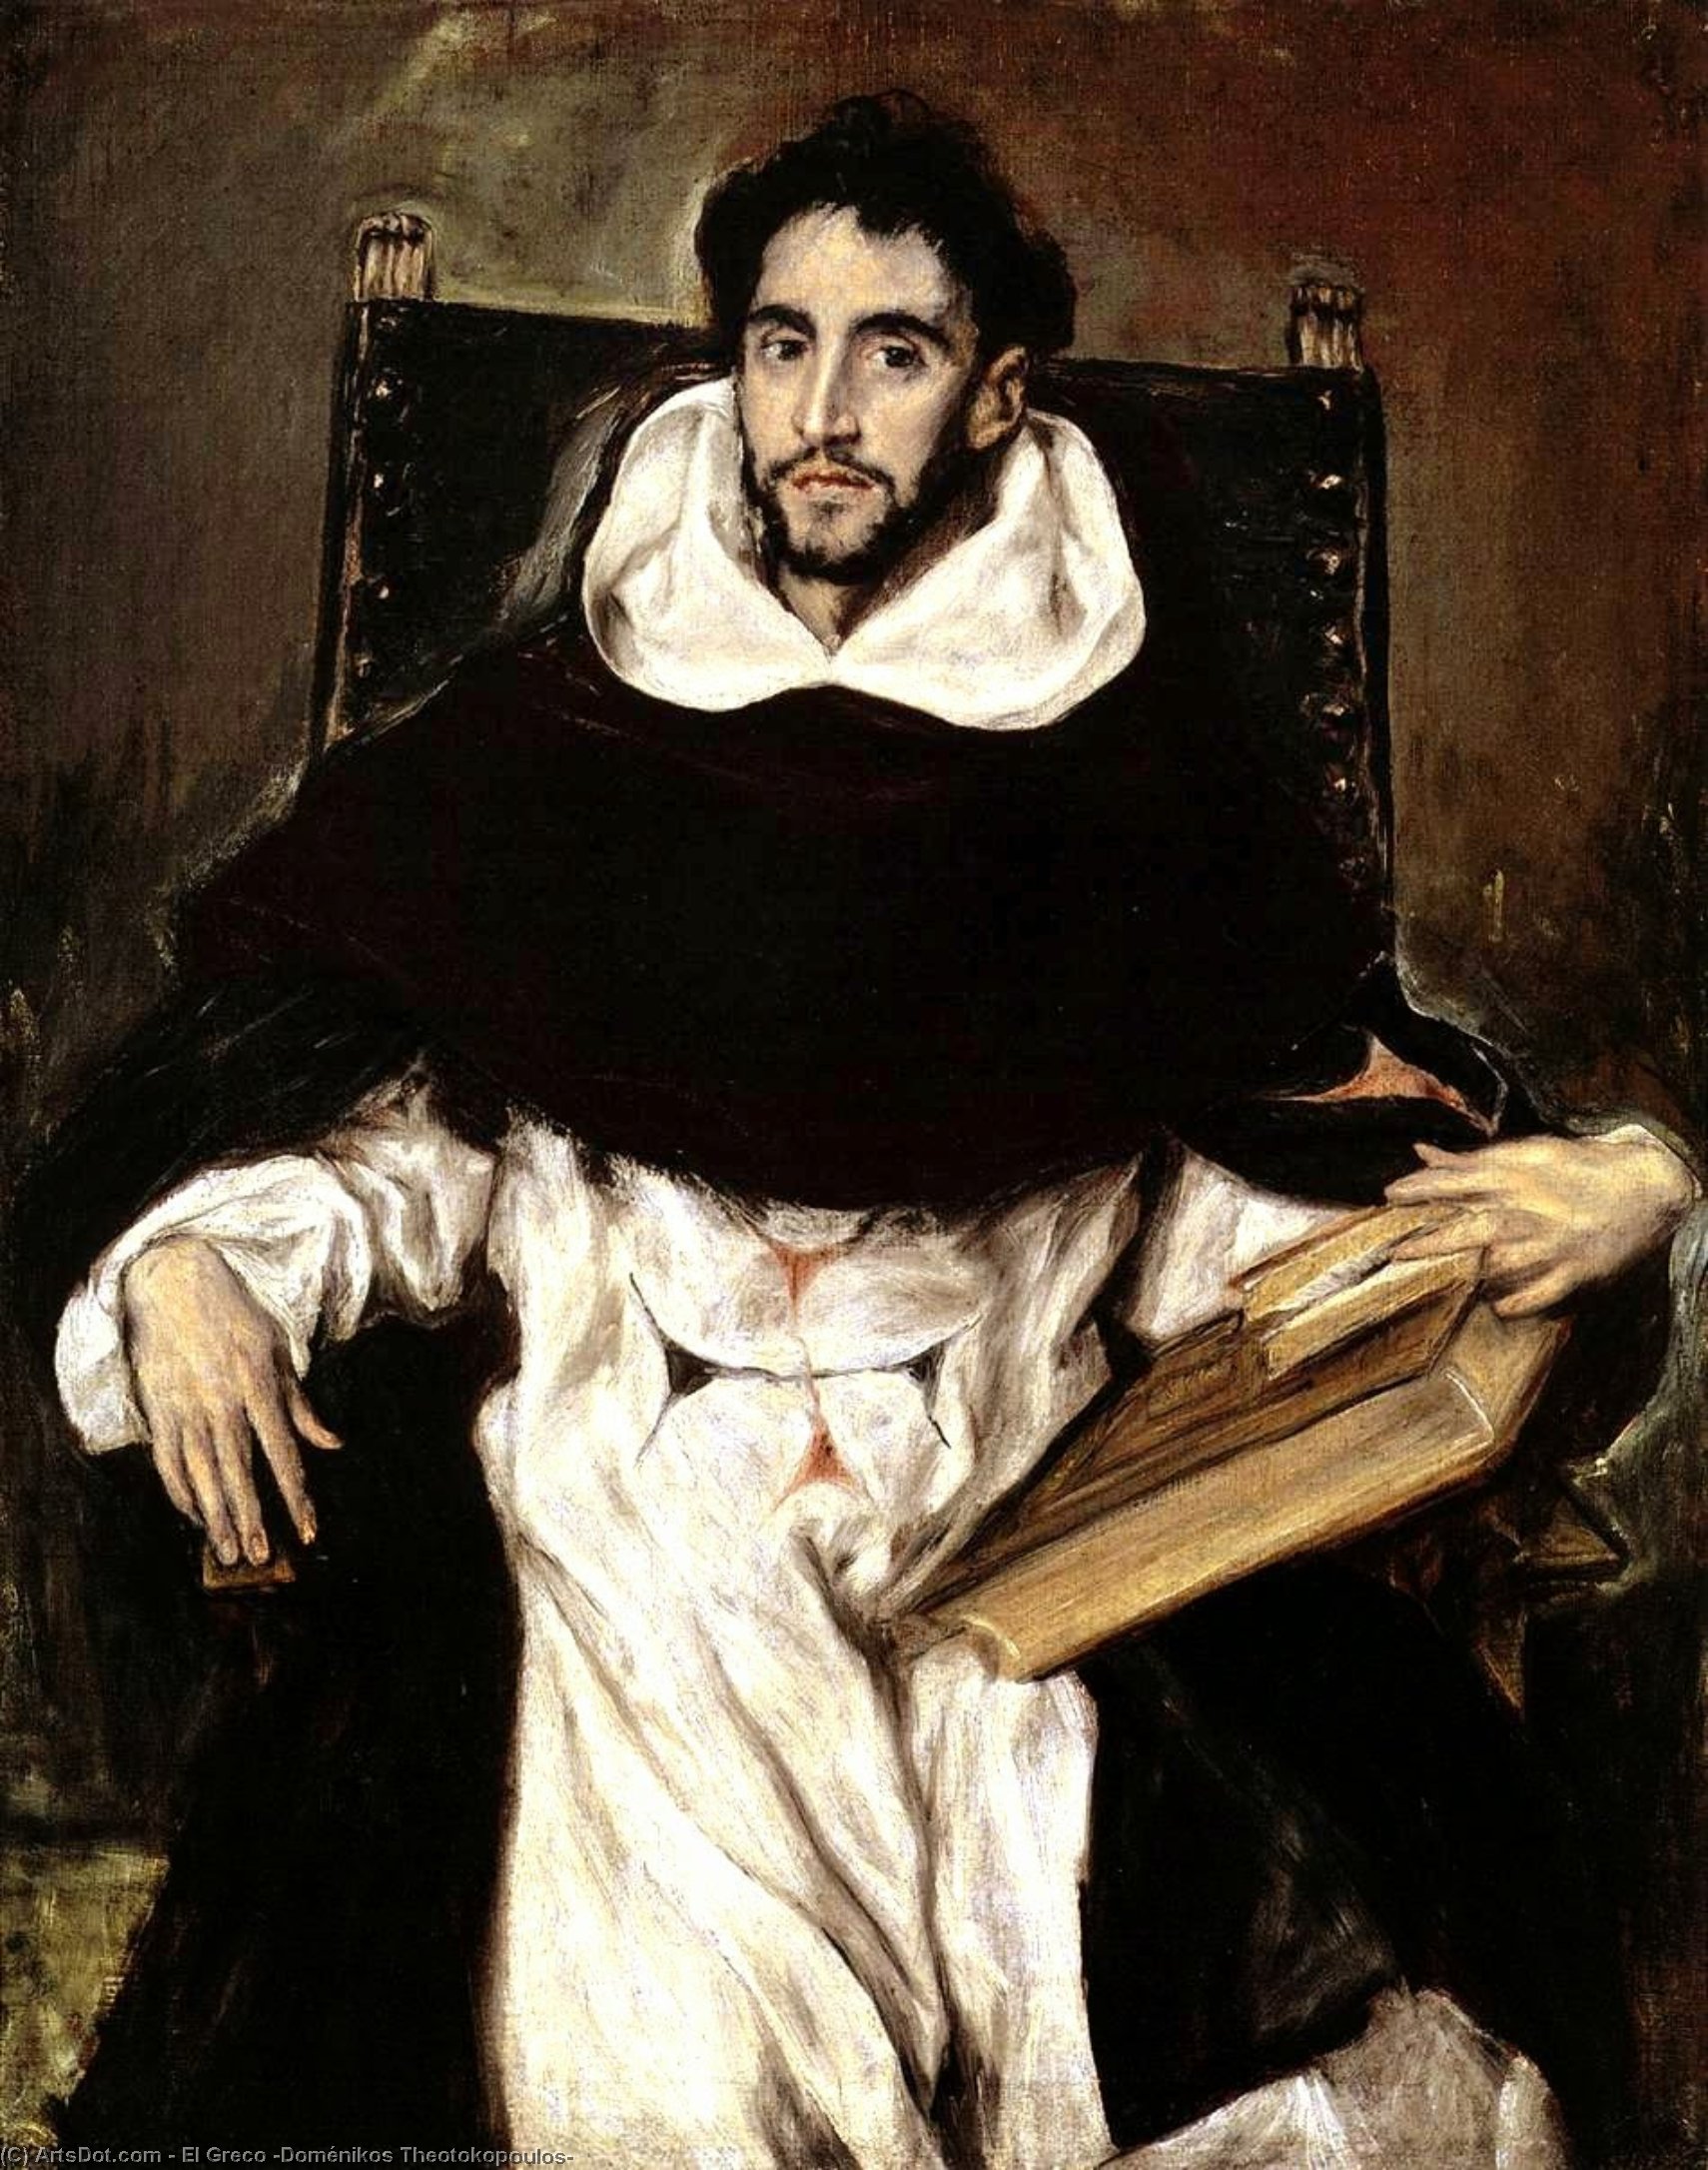 WikiOO.org - Encyclopedia of Fine Arts - Lukisan, Artwork El Greco (Doménikos Theotokopoulos) - Fray Hortensio Félix Paravicino